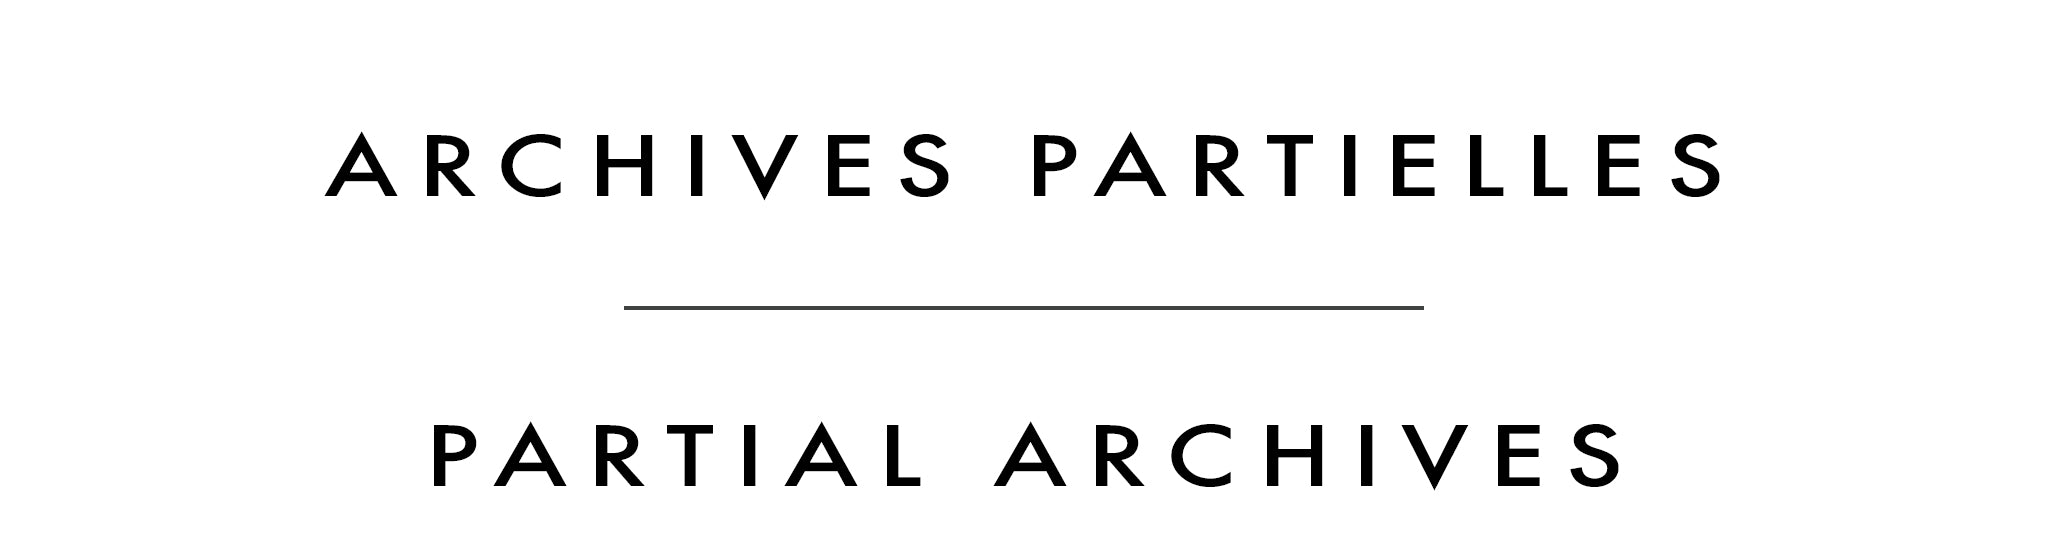 Archives partielles | Partial Archives | Sophie Paquet